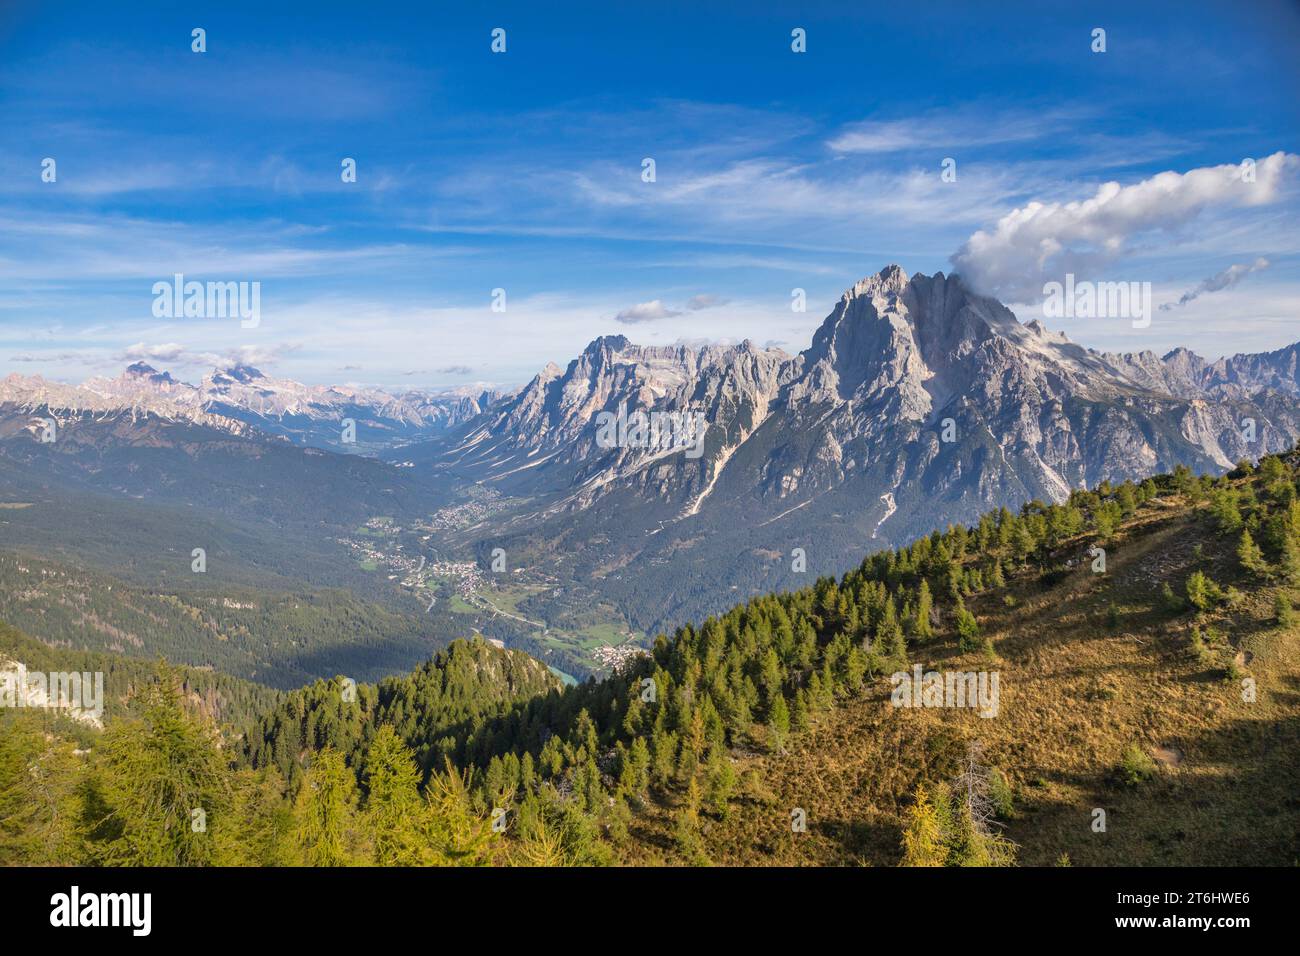 Italia, Veneto, provincia di Belluno, panorama della valle del Boite con i monti Antelao e Sorapis, vista dalla cima del Monte Rite, Dolomiti Foto Stock